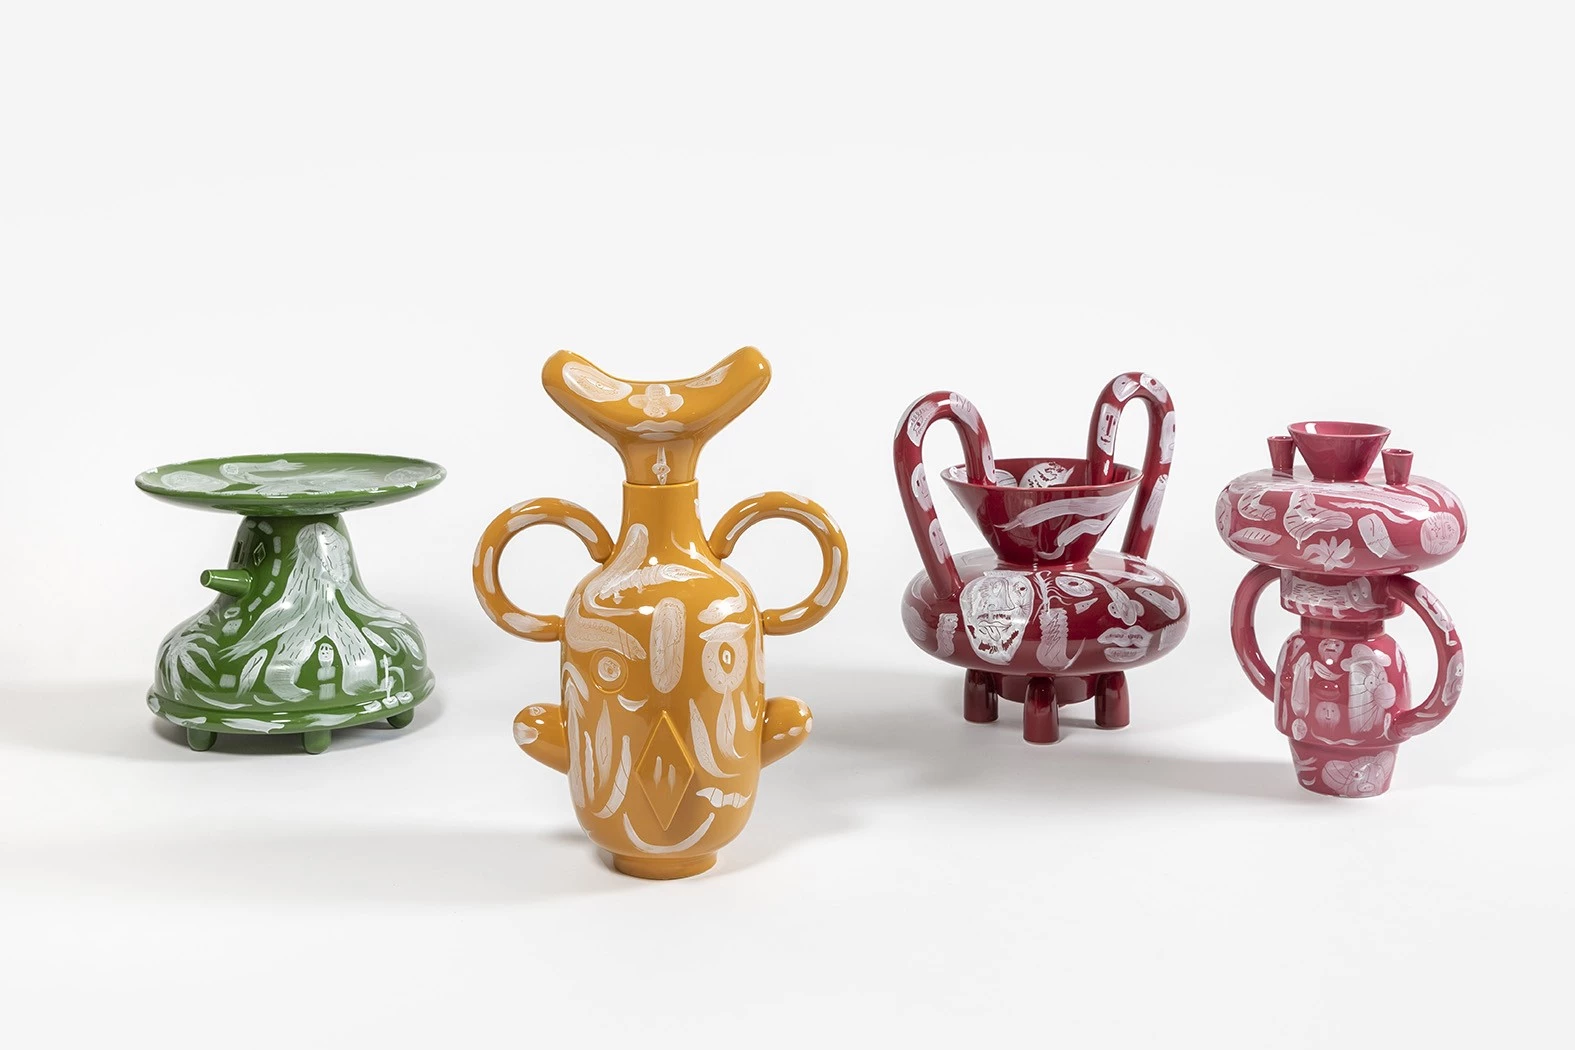 Colonna - Jaime Hayon - Vase - Galerie kreo